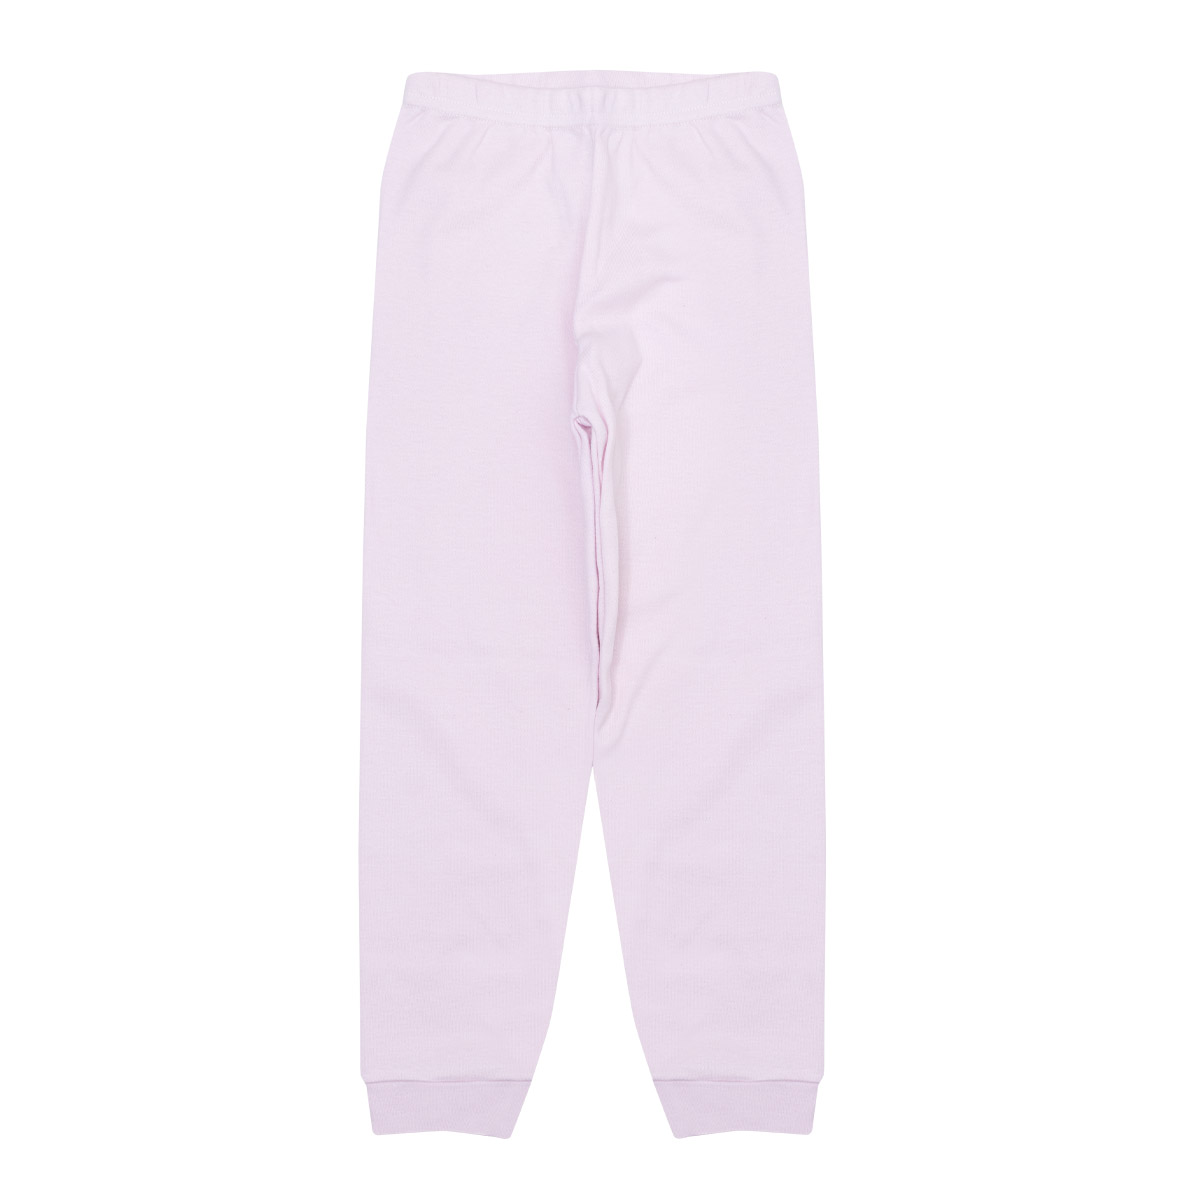 Pijama Infantil Arco Íris Branco - Jeito Infantil